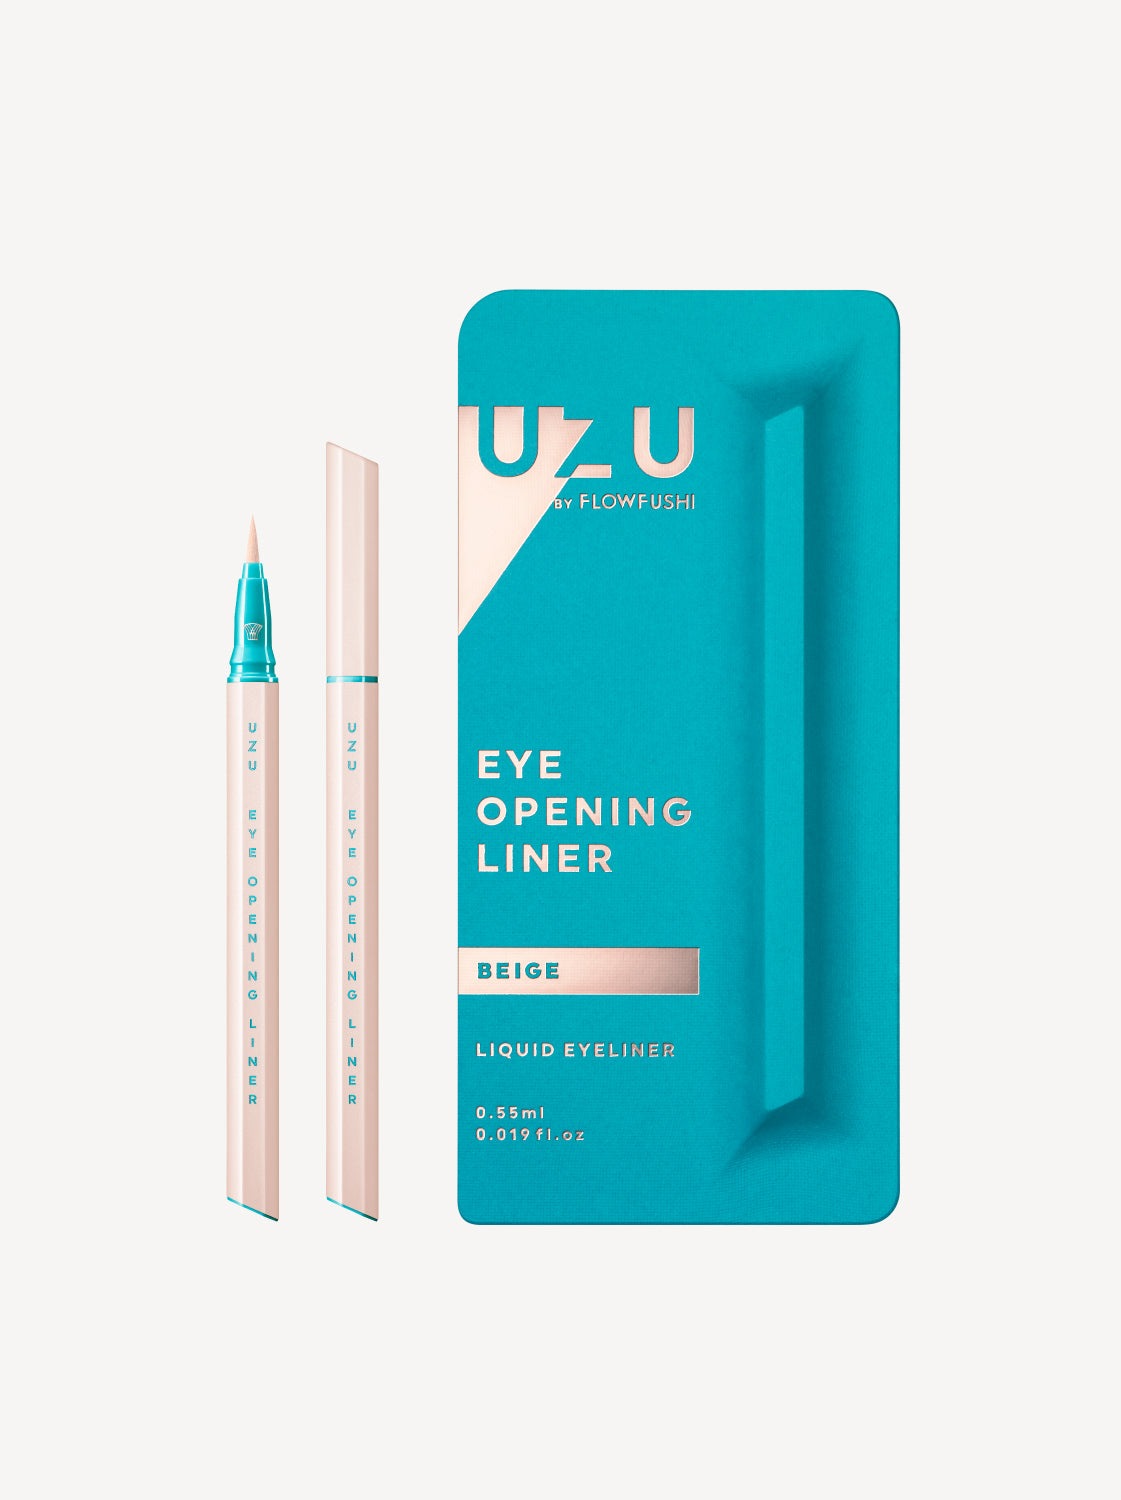 UZU BY FLOWFUSHI Eye Opening Liner Liquid Eyeliner #BEIGE – Momoko Cosmetics